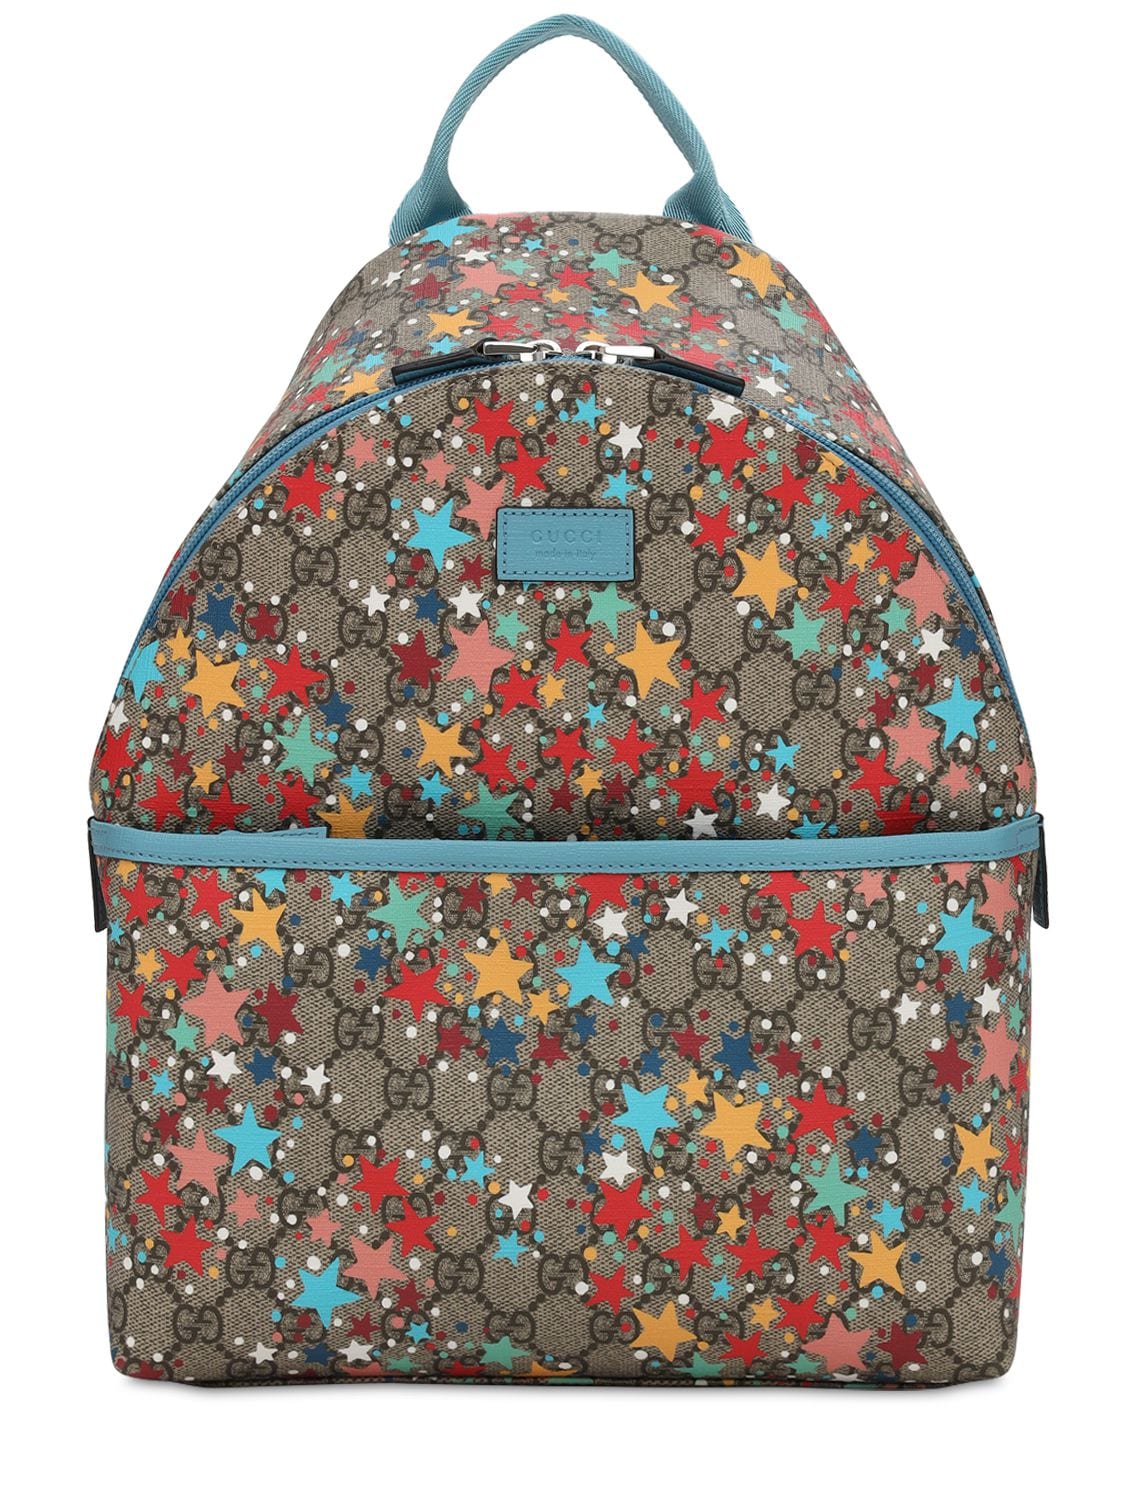 Gg Supreme Stars Print Backpack